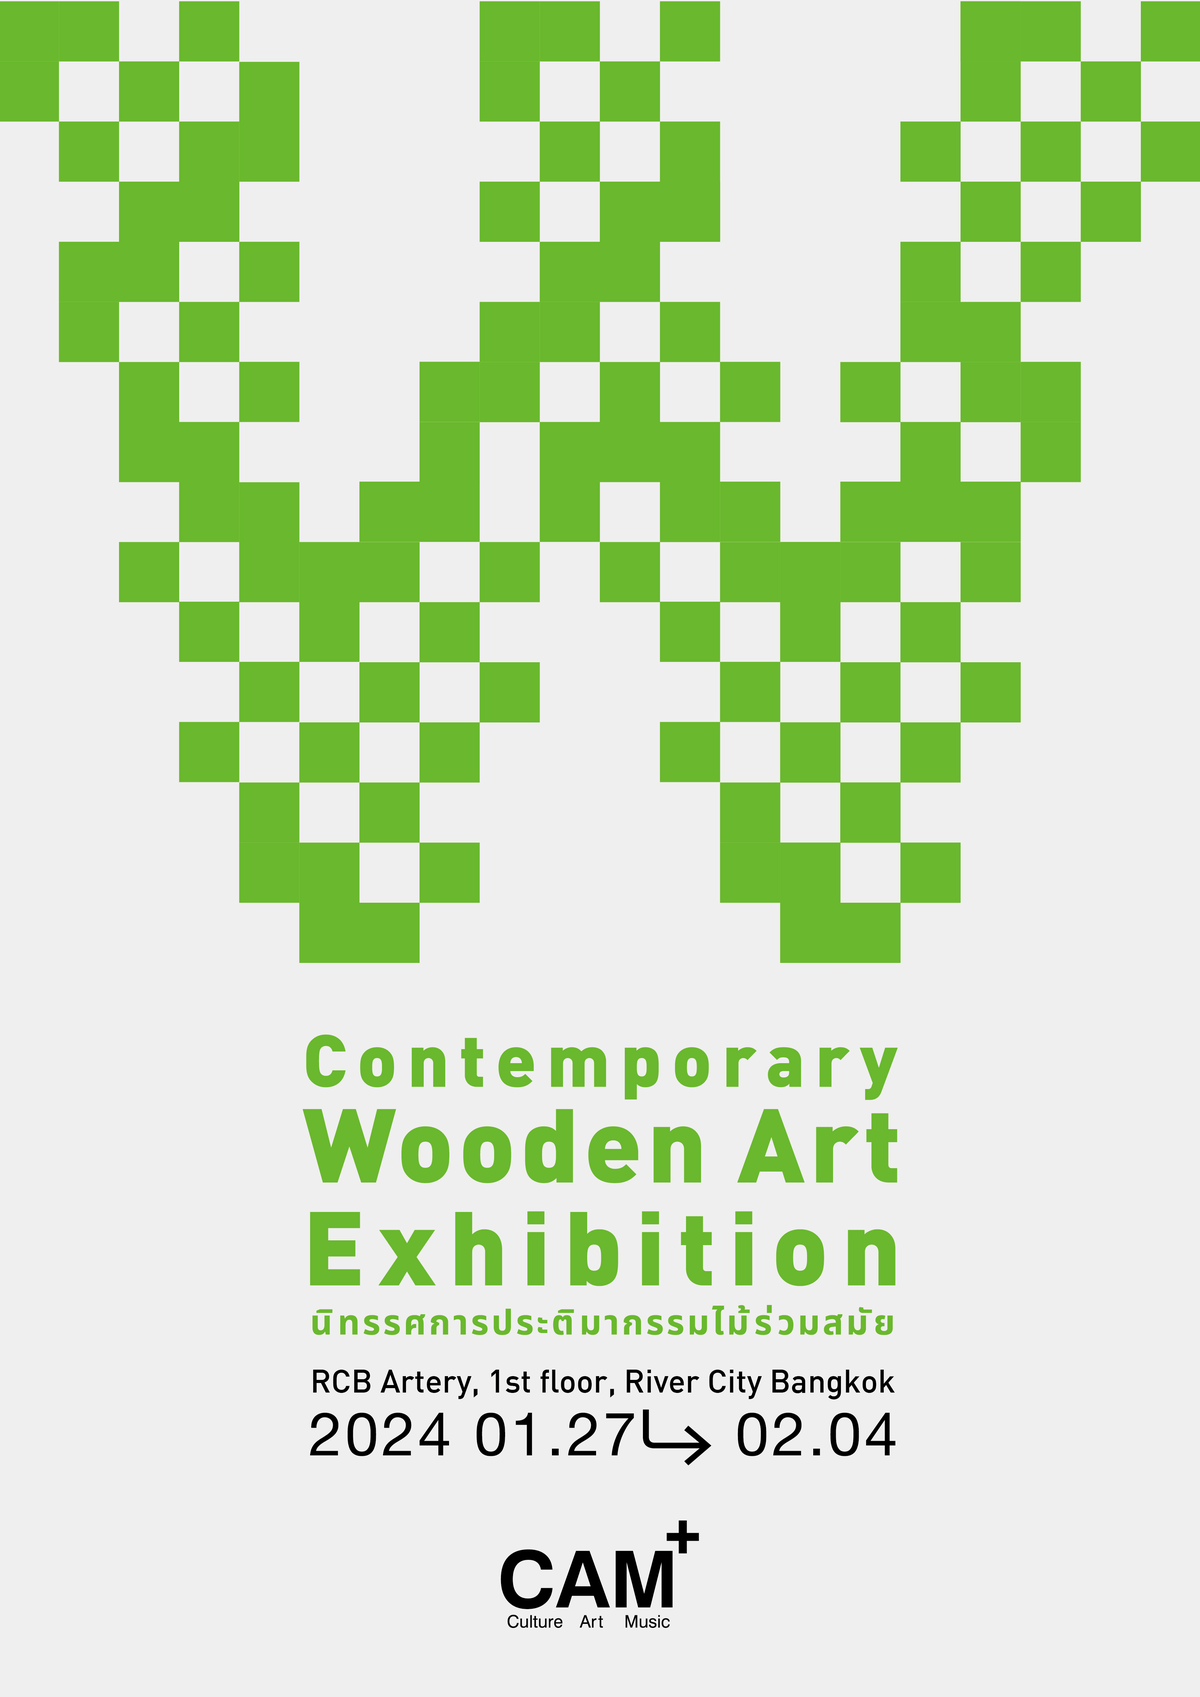 ไม้กลับมามีชีวิตอีกครั้งผ่านนิทรรศการประติมากรรมไม้ร่วมสมัย 'Contemporary Wooden Art Exhibition' ณ ริเวอร์ ซิตี้